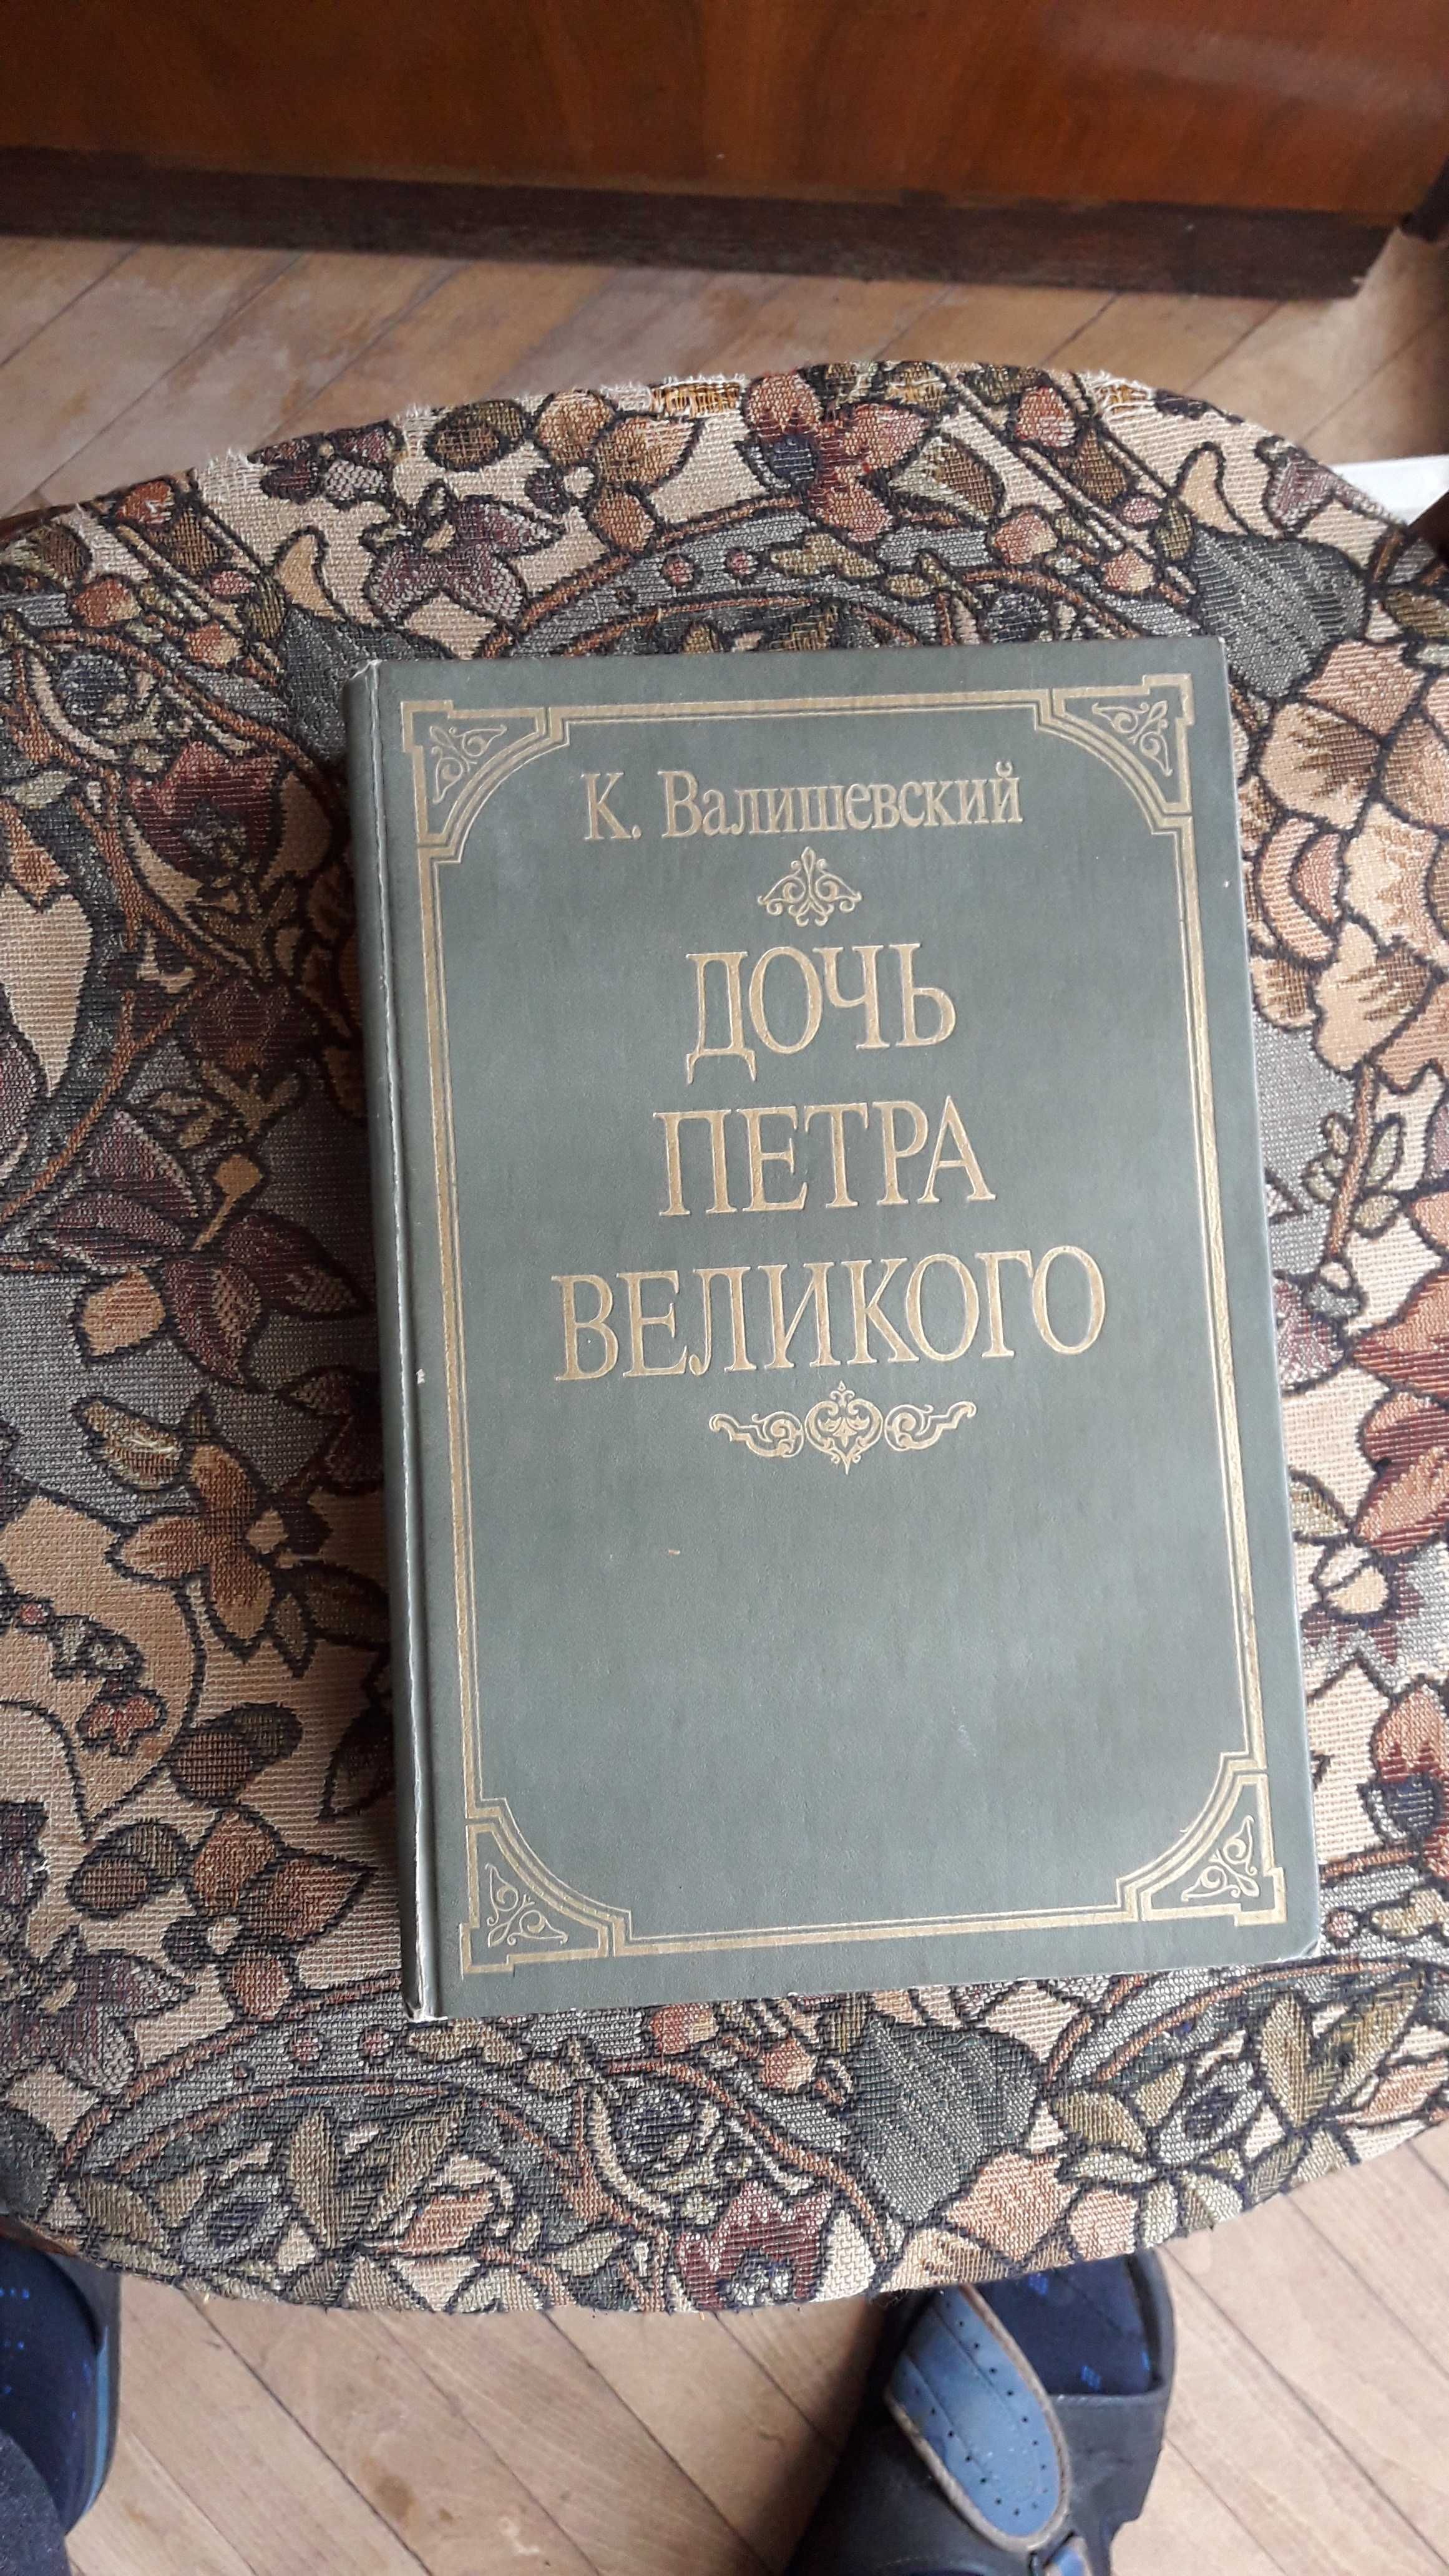 К. Валишевский "Дочь Петра Великого" репринтное издание 1911 года